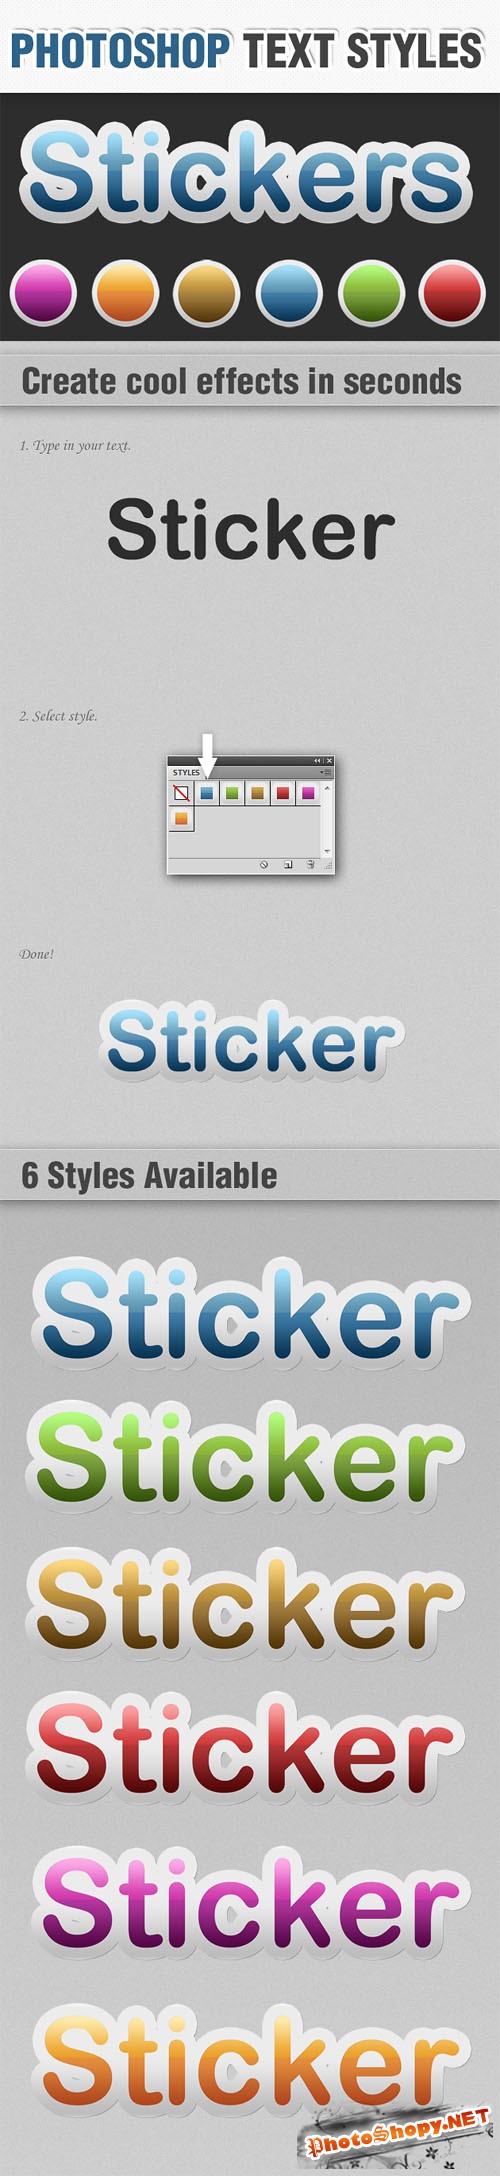 Designtnt - Sticker Photoshop Text Styles